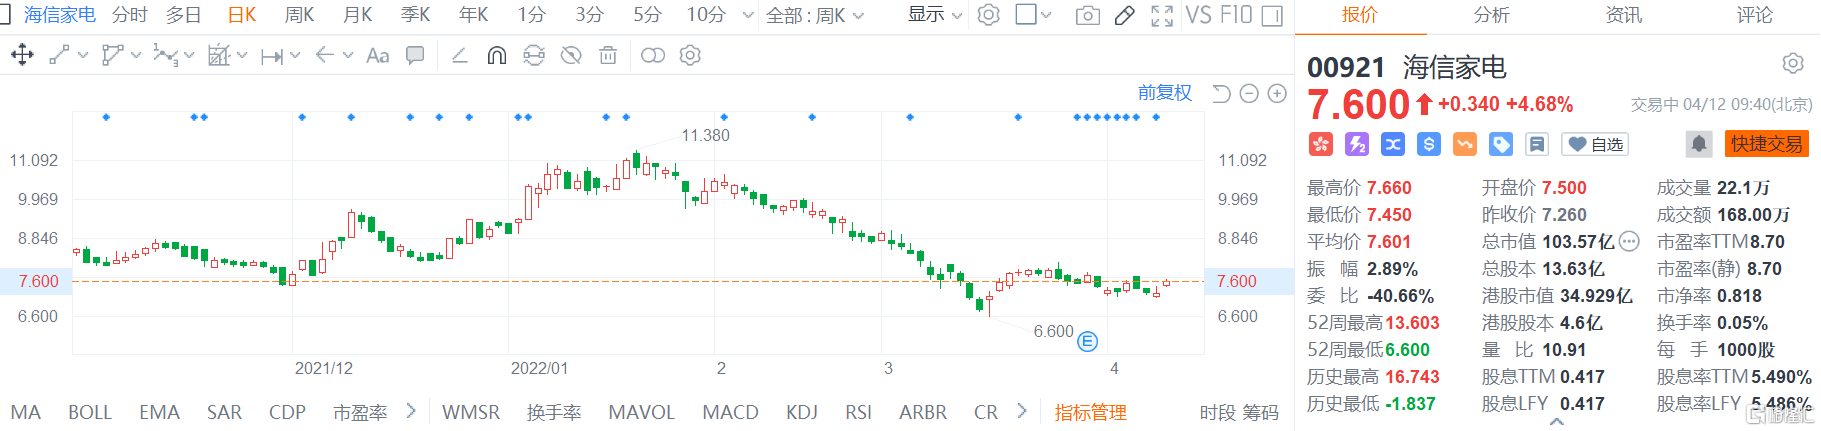 海信家电(0921.HK)高开高走 现报7.6港元涨幅4.68%